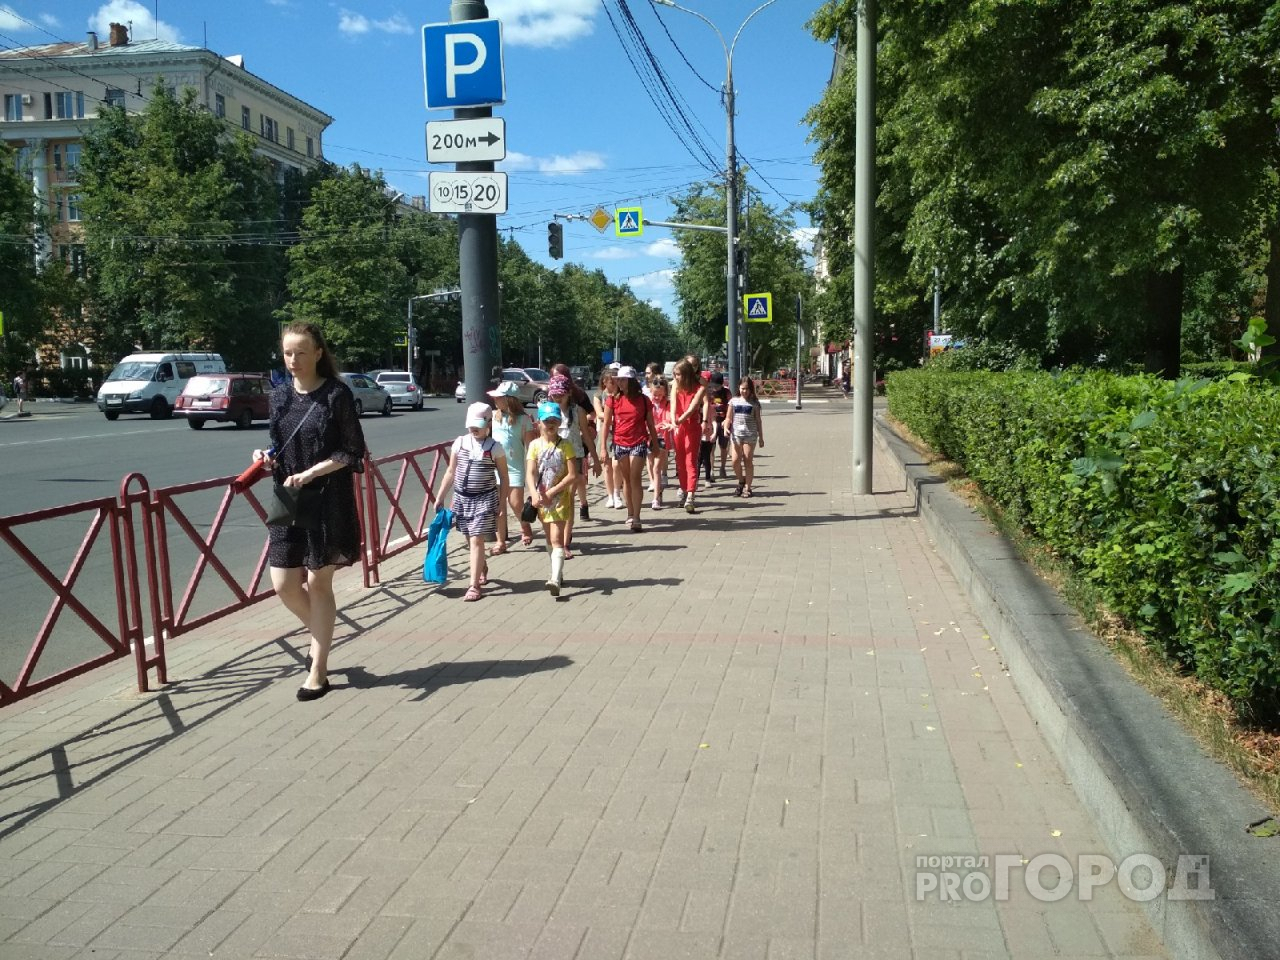 Секции и кружки ребенку оплатят власти: как получить сертификат в Ярославле